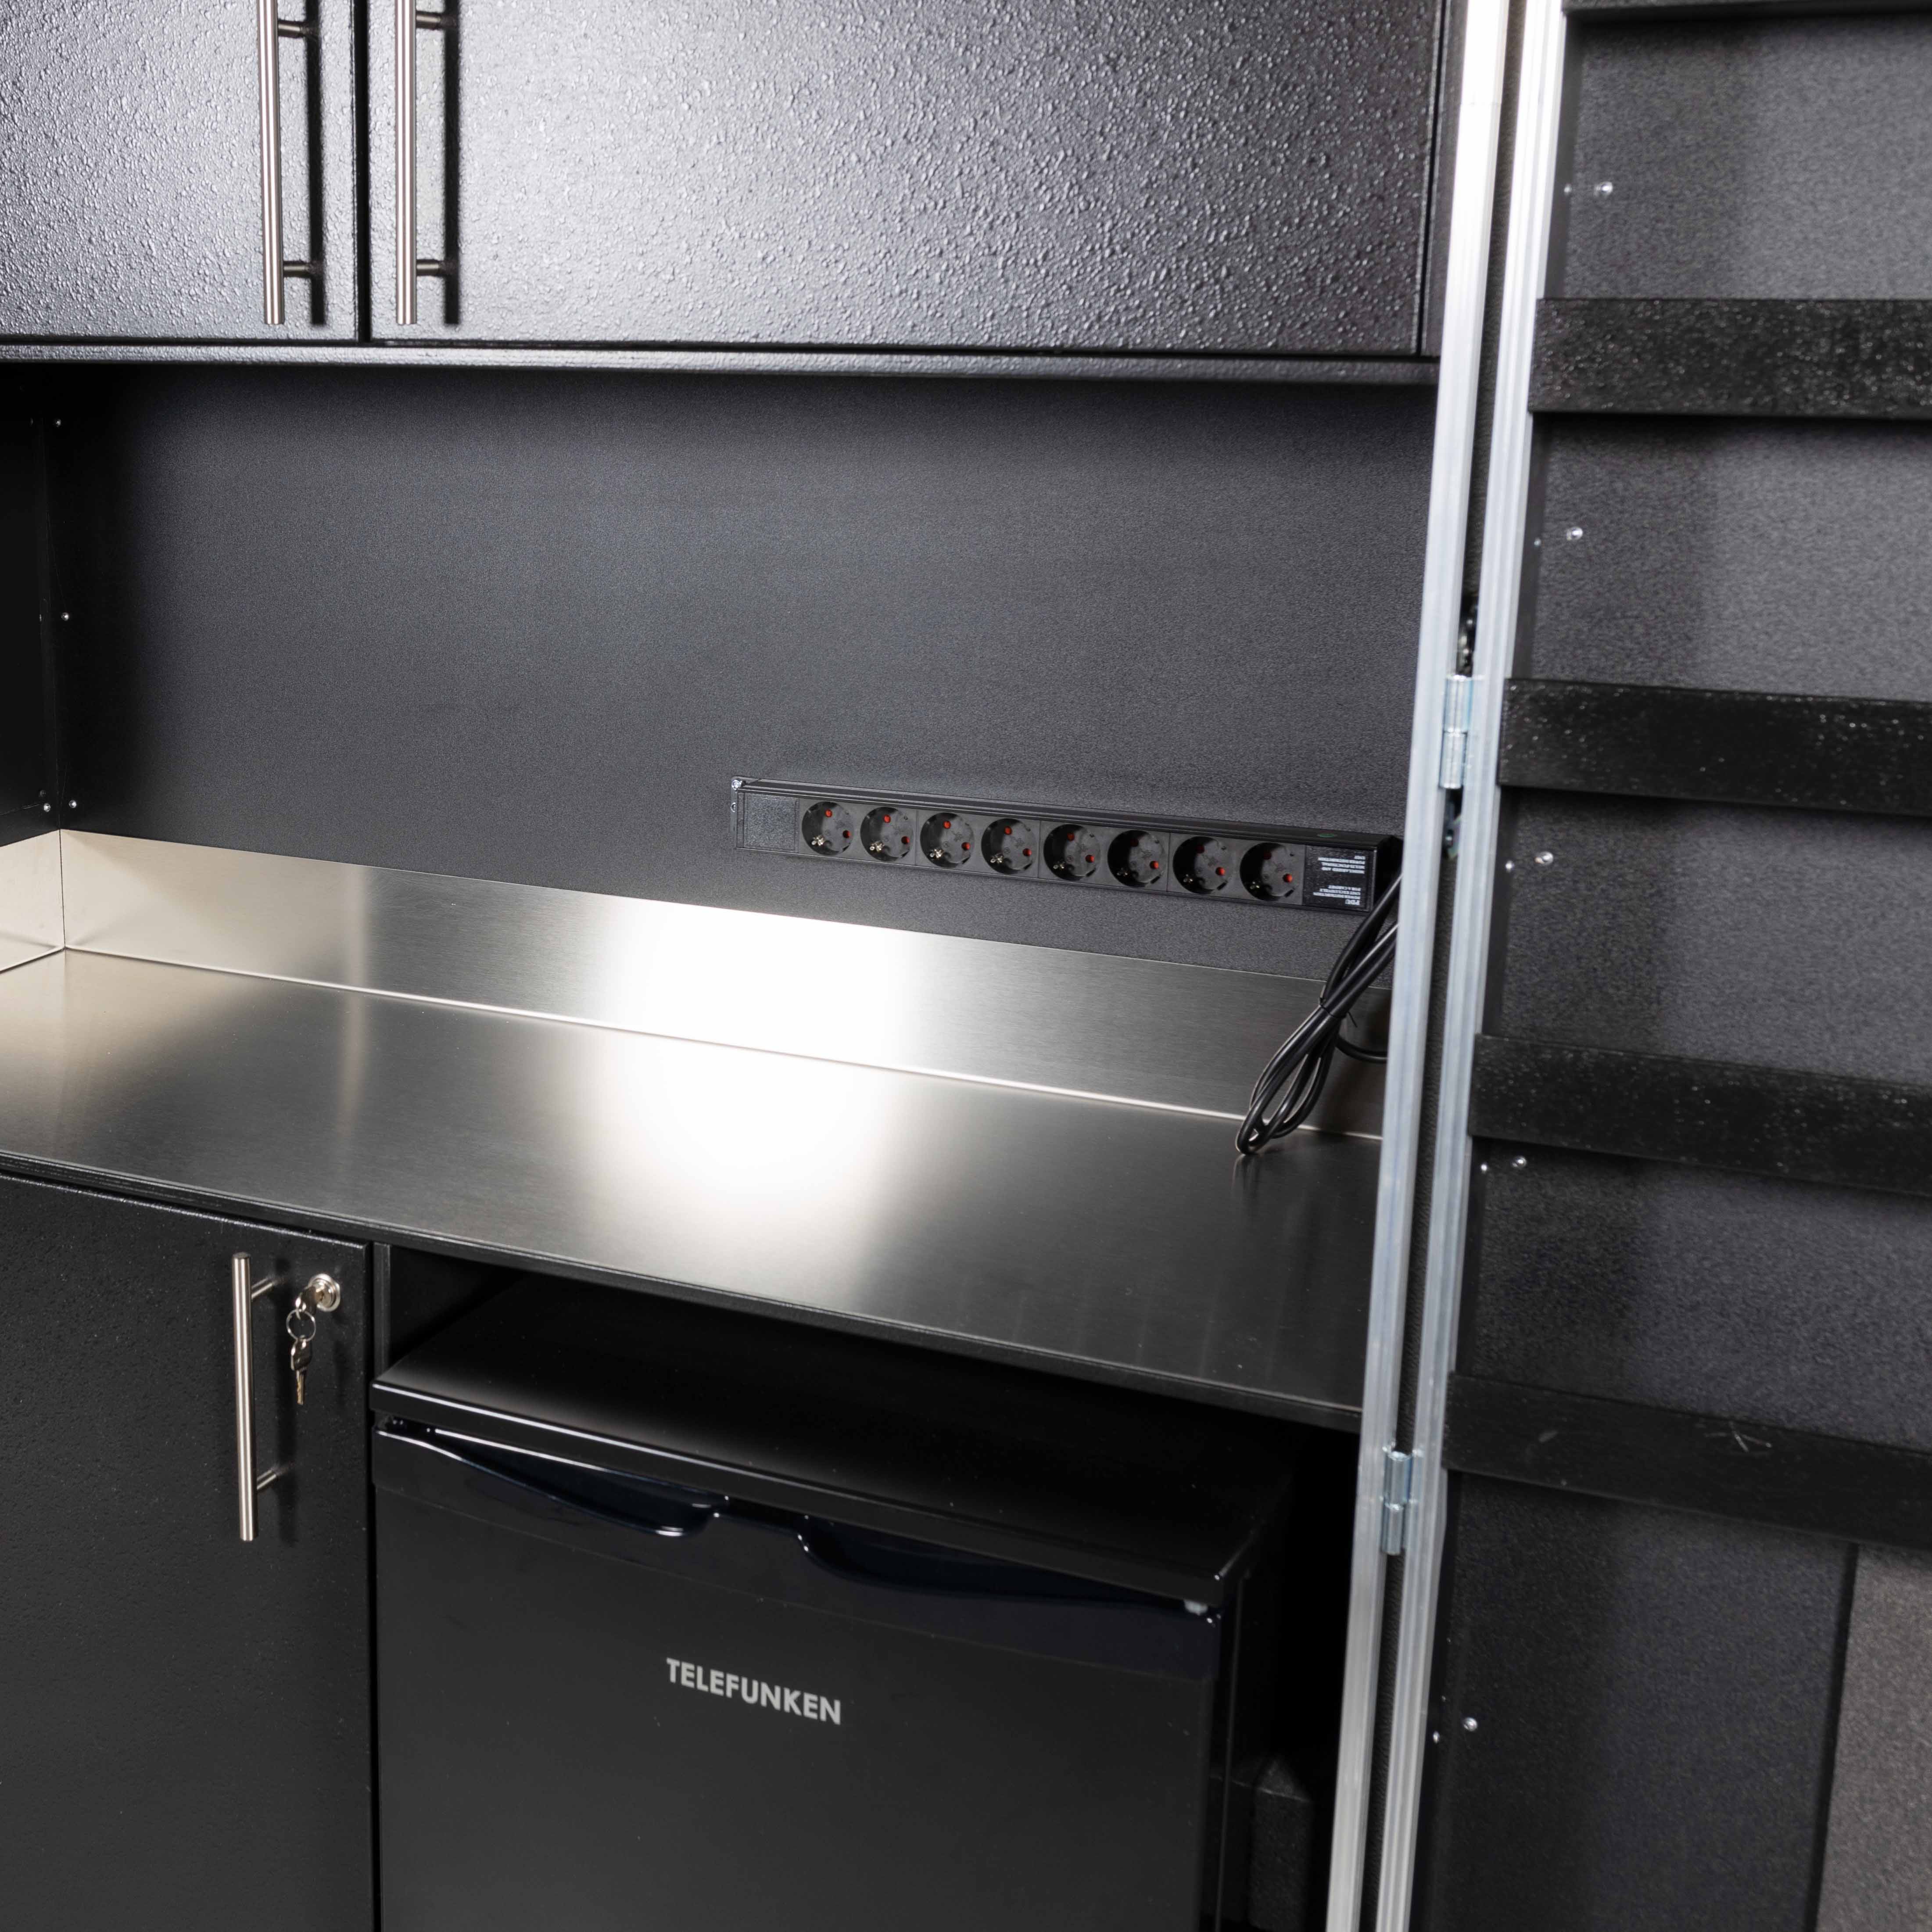 Küchencase/Cateringcase mit Edelstahlarbeitsfläche und Kühlschrankfach